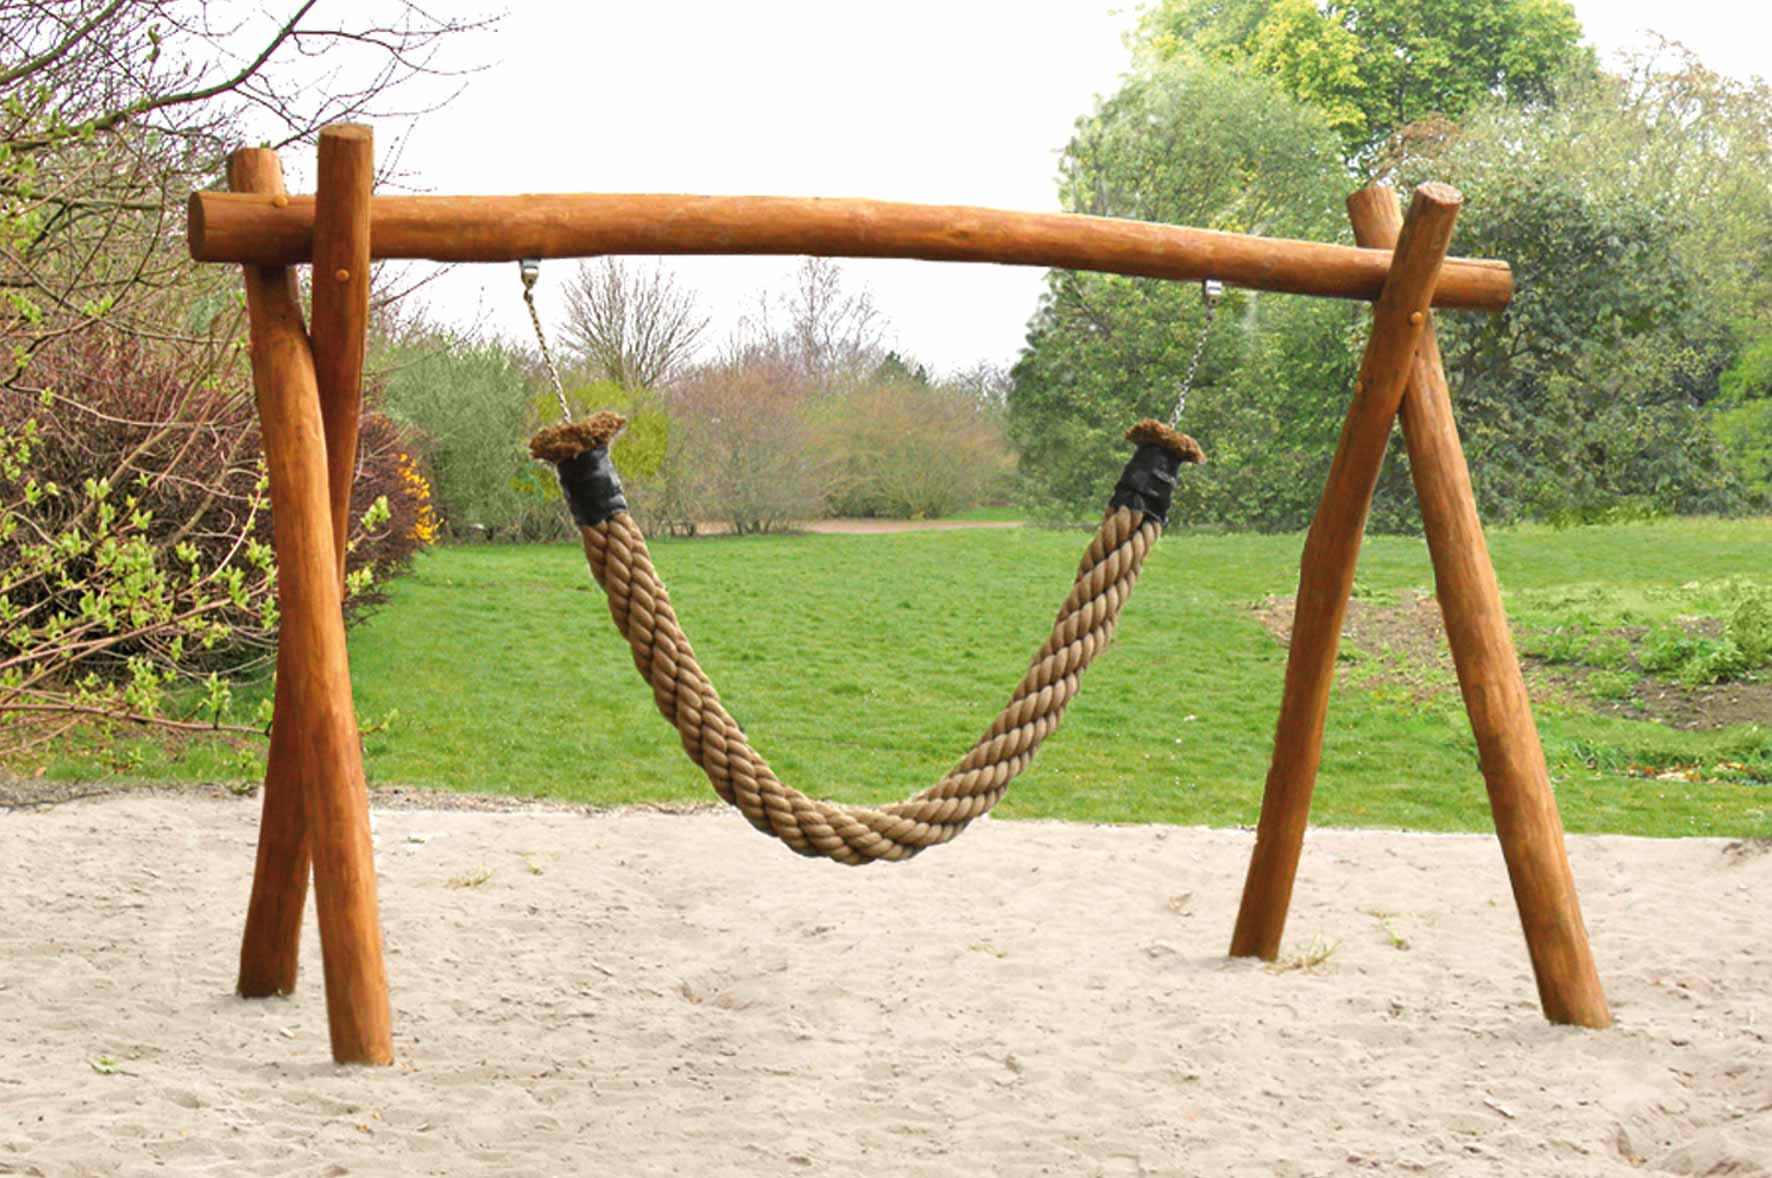 rope swing games